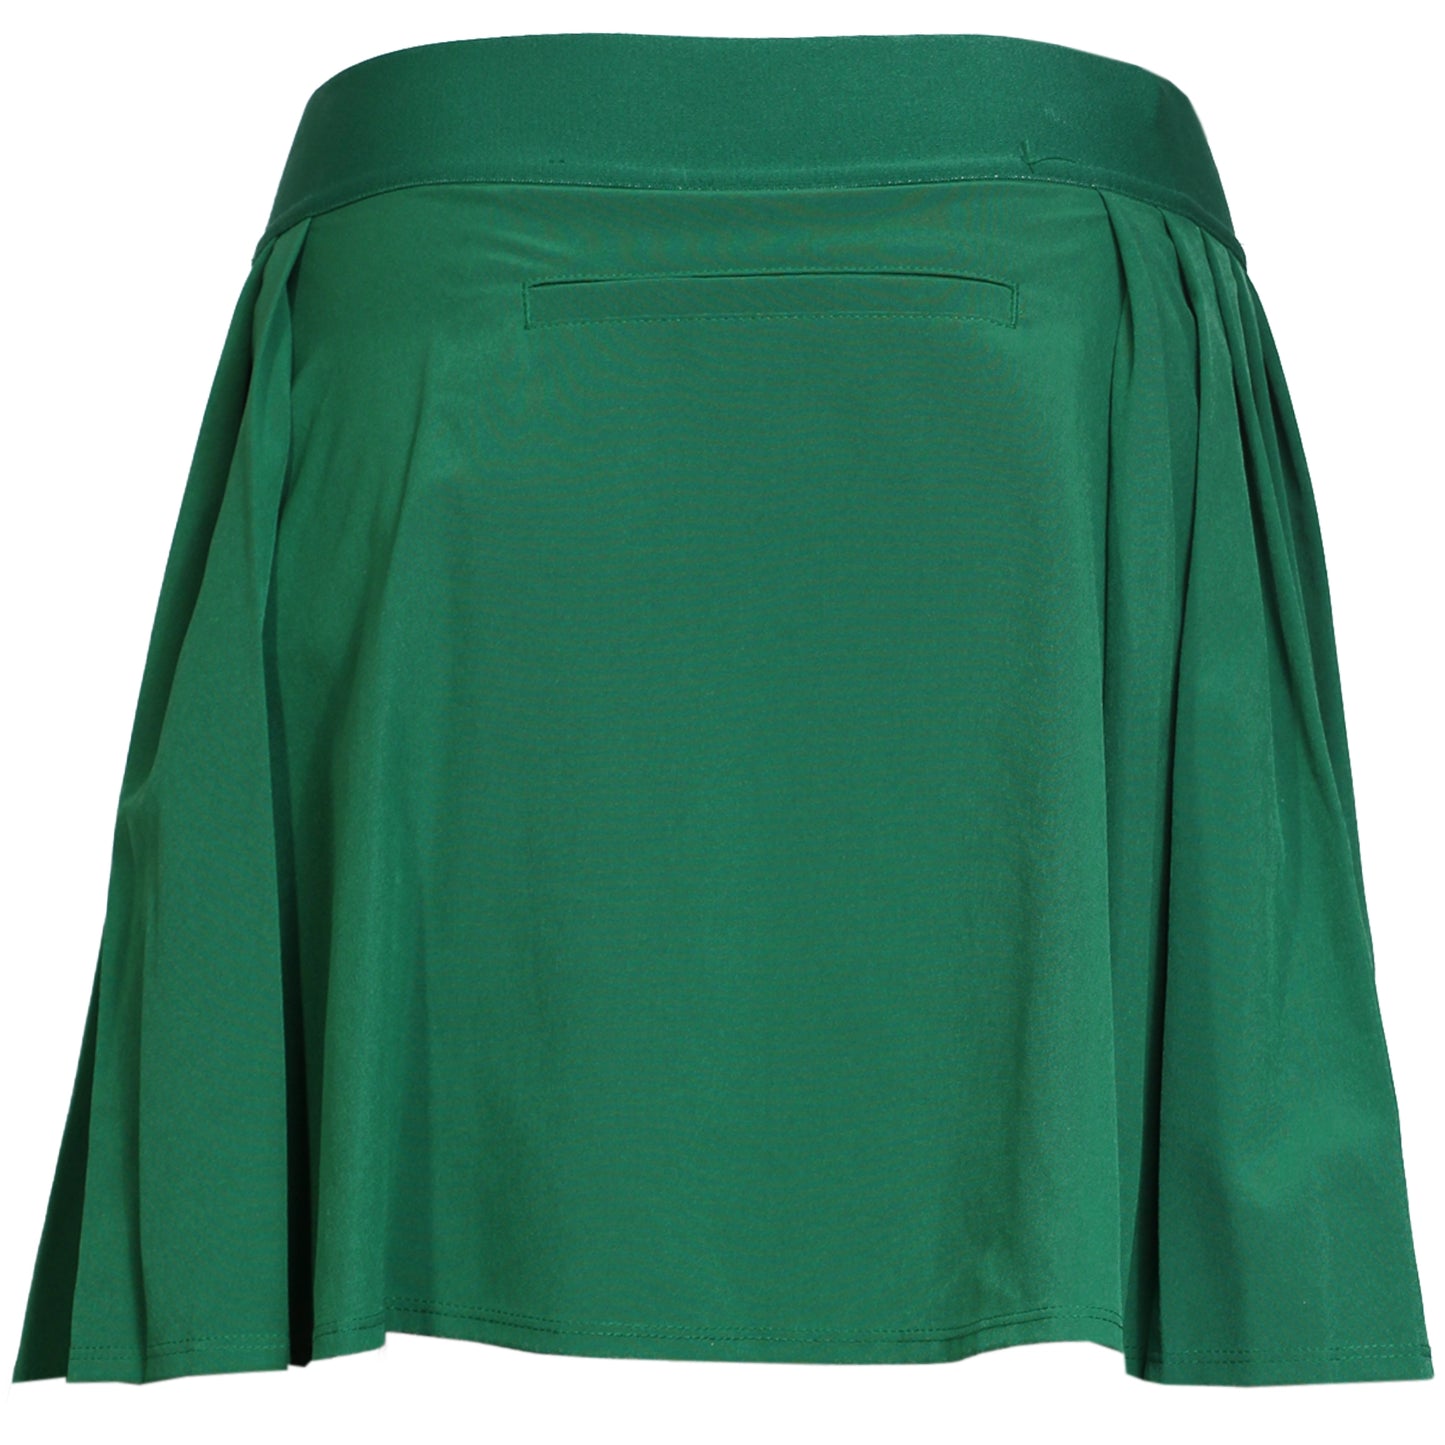 Lacoste Women's Skirt JF9433-52-NHI